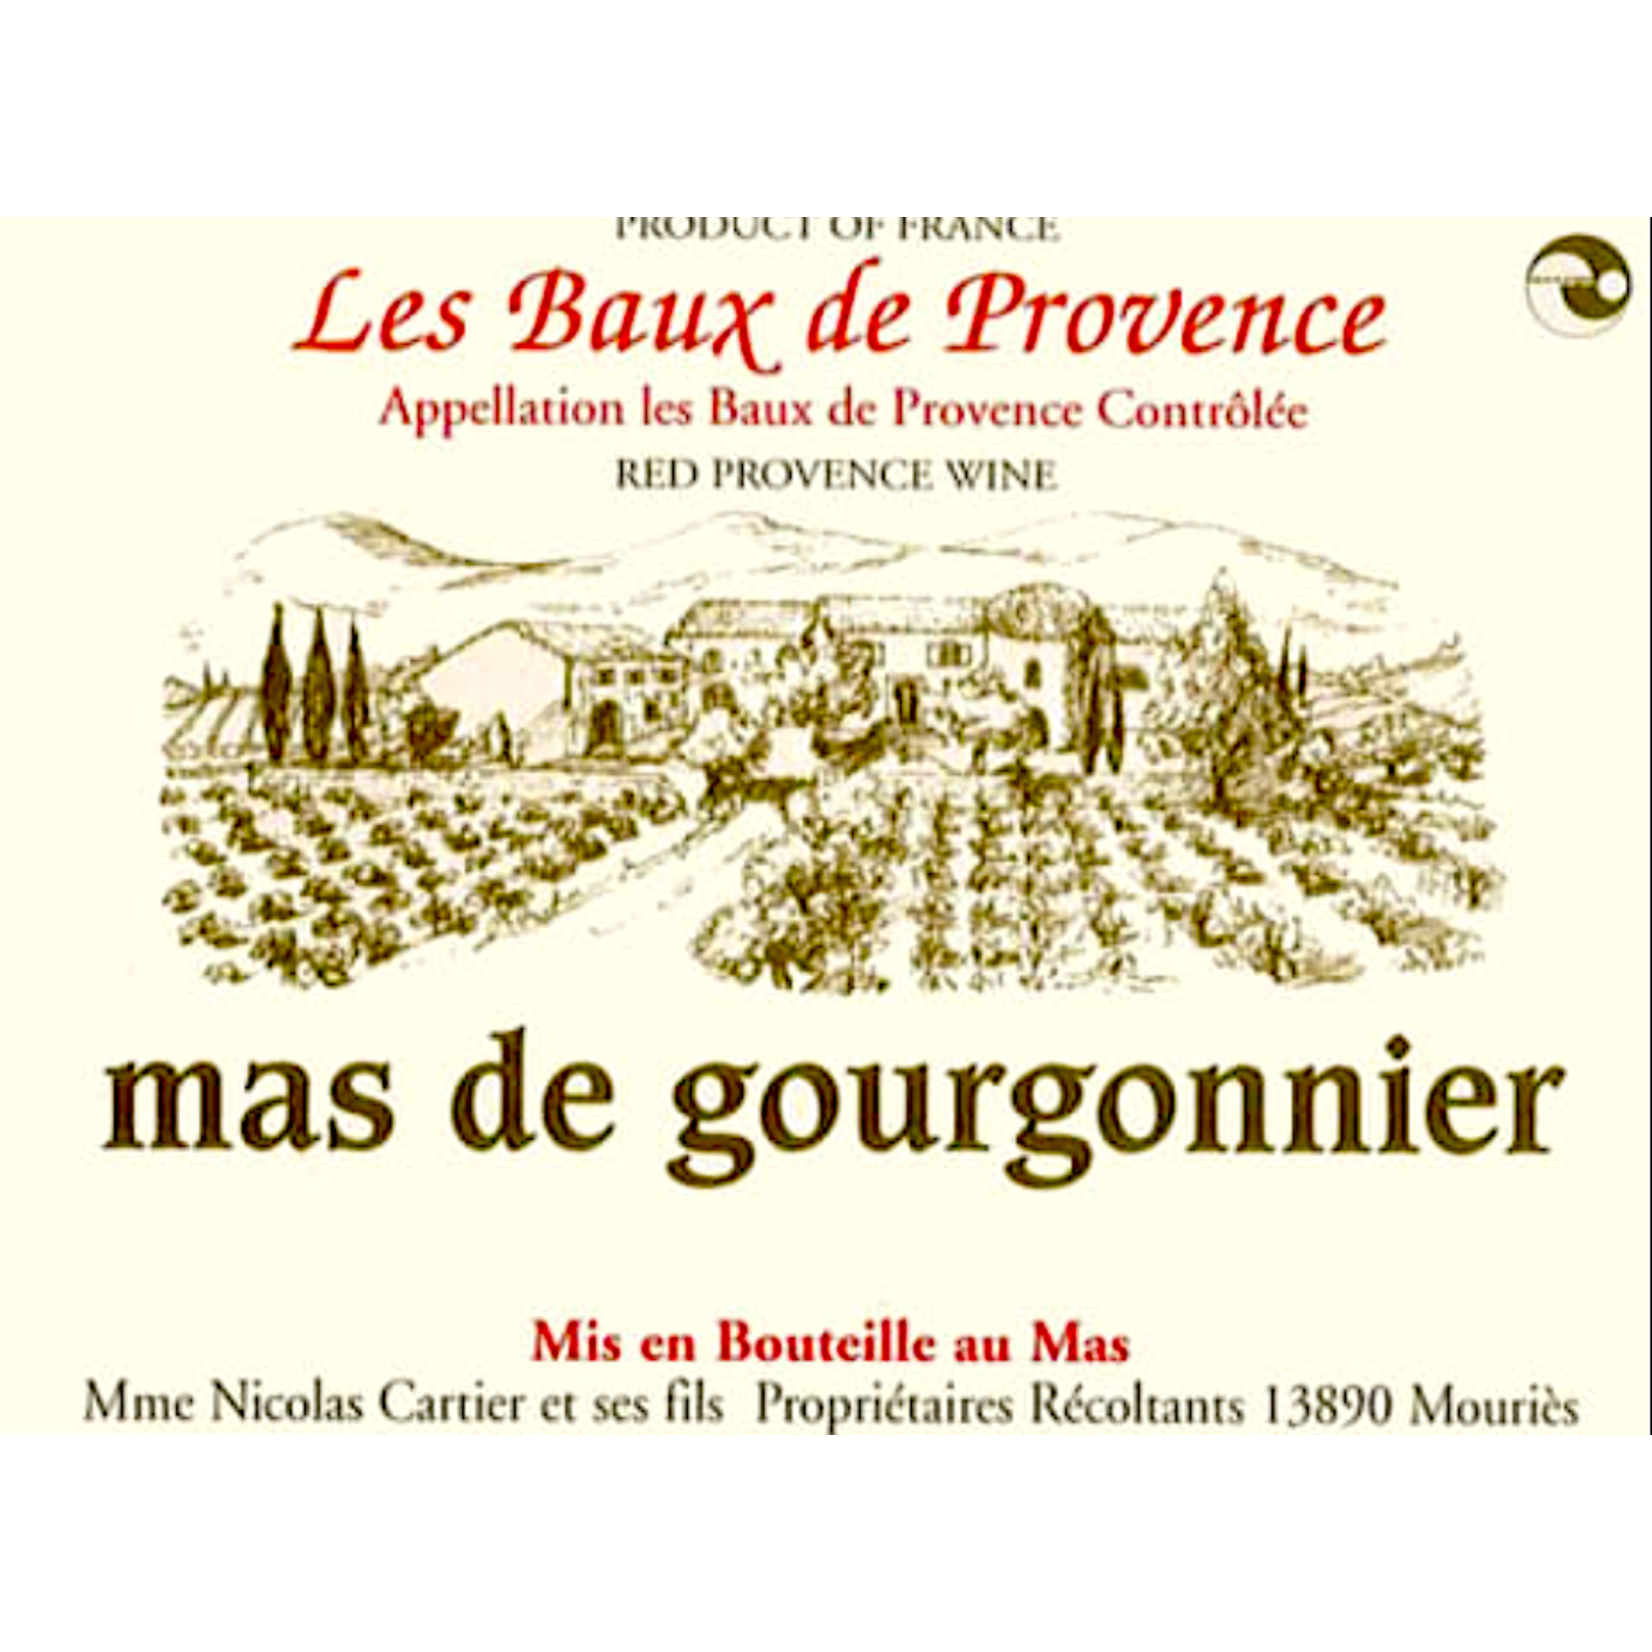 Les Baux de Provence Mas de Gourgonnier Les Baux de Provence Rouge 2020 ORGANIC Provence, France